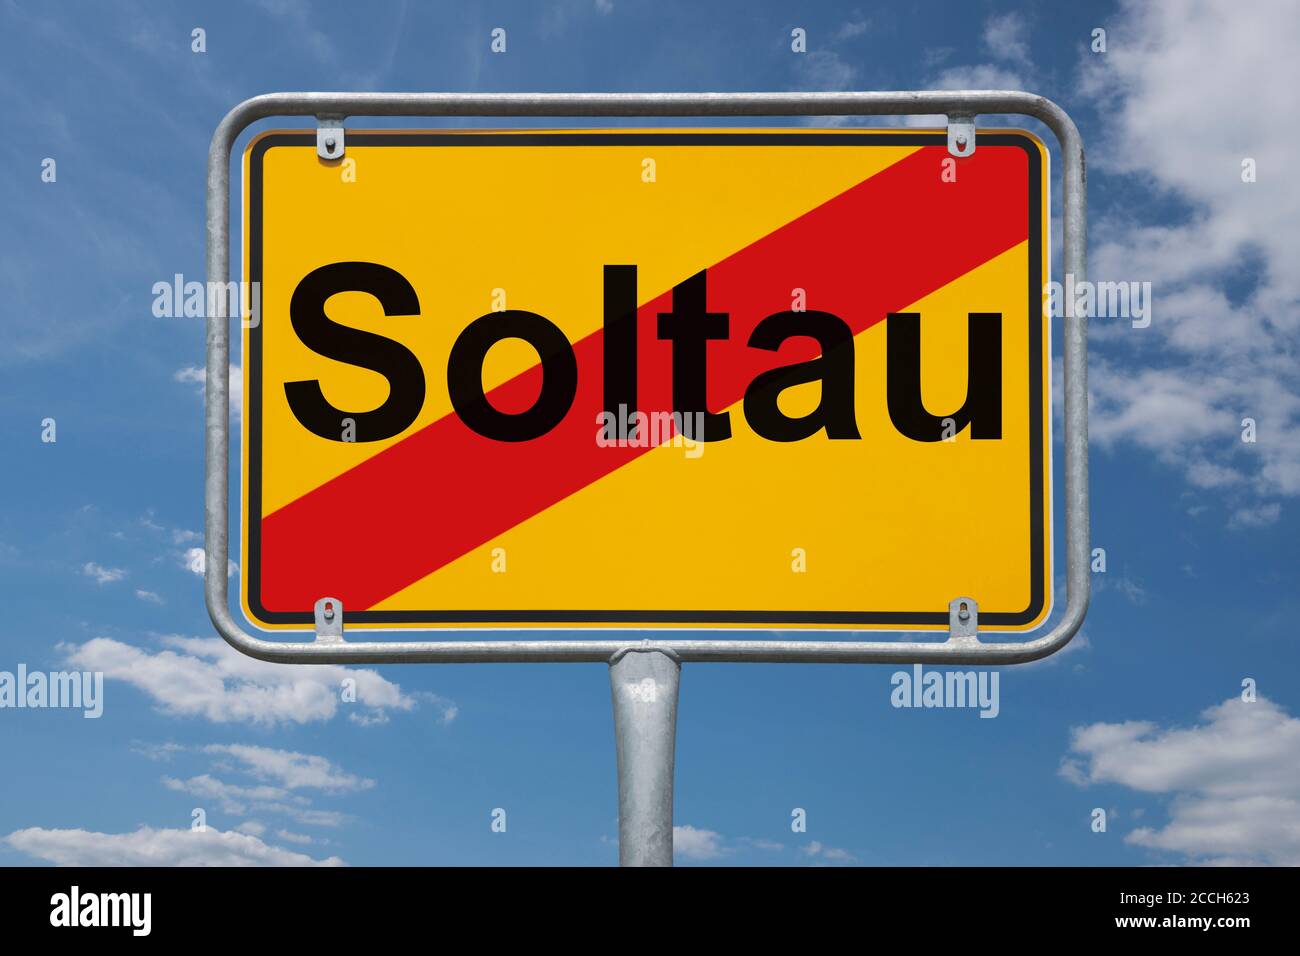 Ortstafel Soltau, Niedersachsen, Deutschland | panneau de nom de lieu Soltau, Basse-Saxe, Allemagne, Europe Banque D'Images